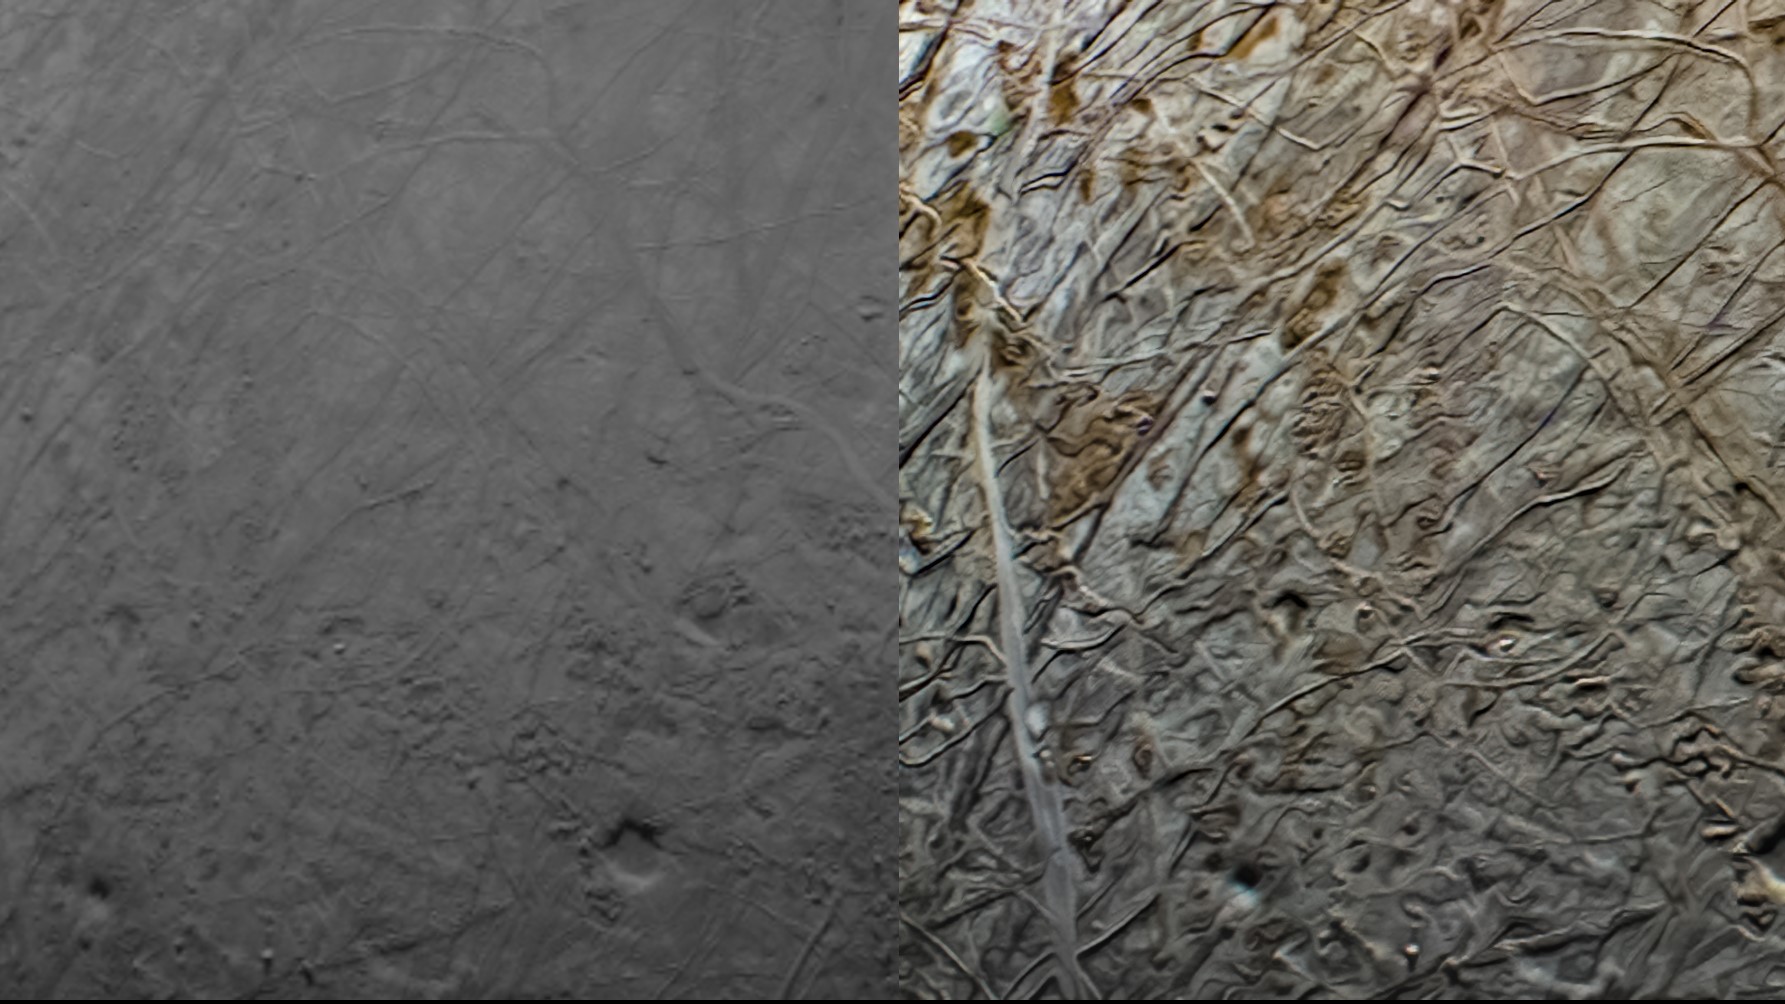 solda, çatlaklar ve doku görünen grimsi bir görüntü;  sağda beyaz ve ten rengi astarlı bir yüzey